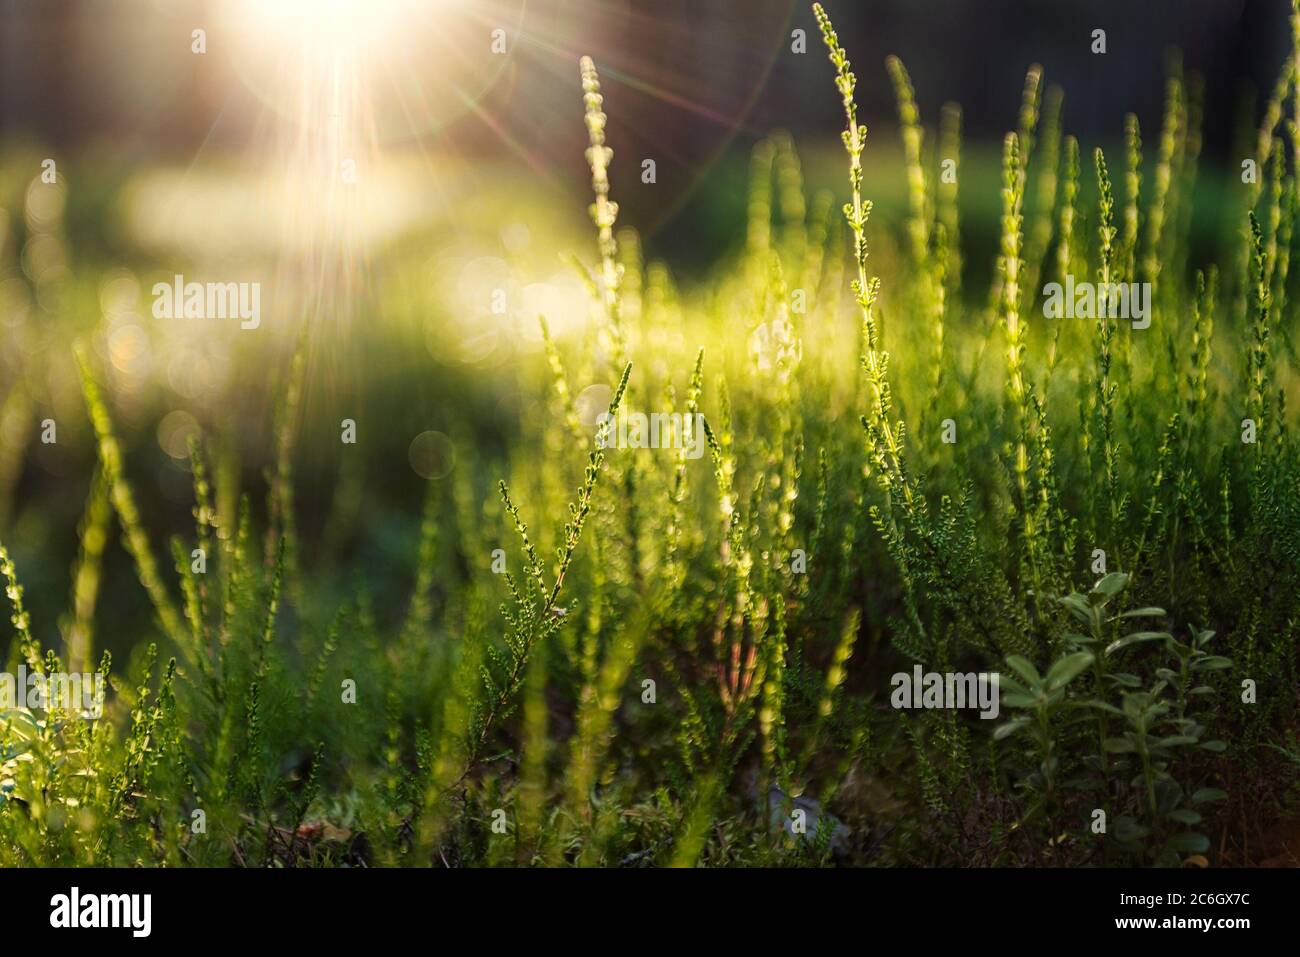 Abstraktes verträumtes Foto von Sommerwaldwiese. Gras und Sträucher leuchten im Abendlicht. Natur Hintergrund. Stockfoto